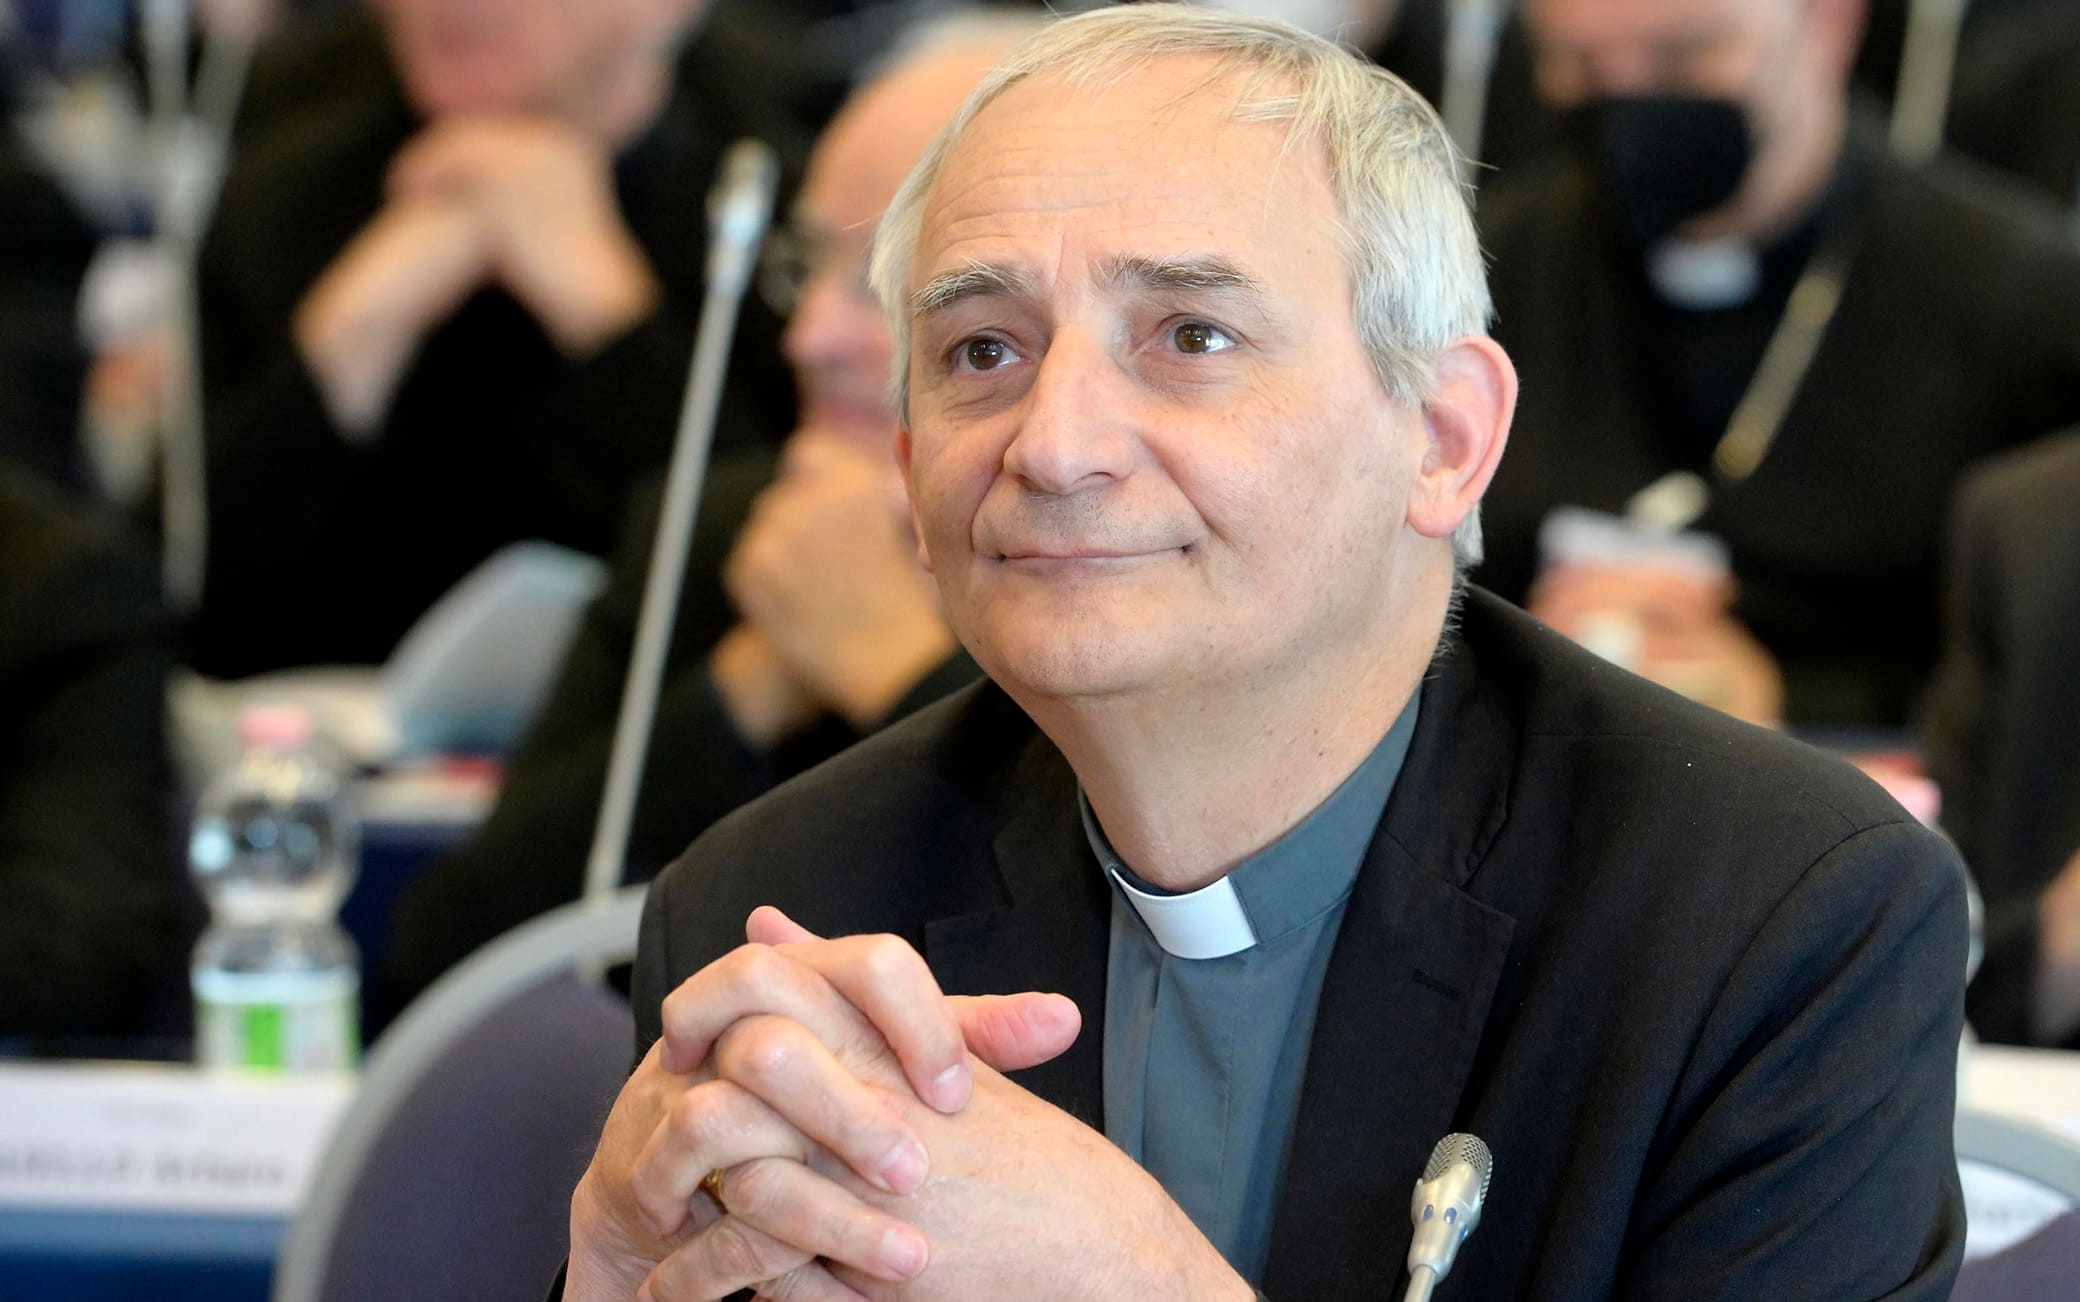 Il cardinale Zuppi: "Le migrazioni sono un problema da affrontare insieme in maniera costruttiva"